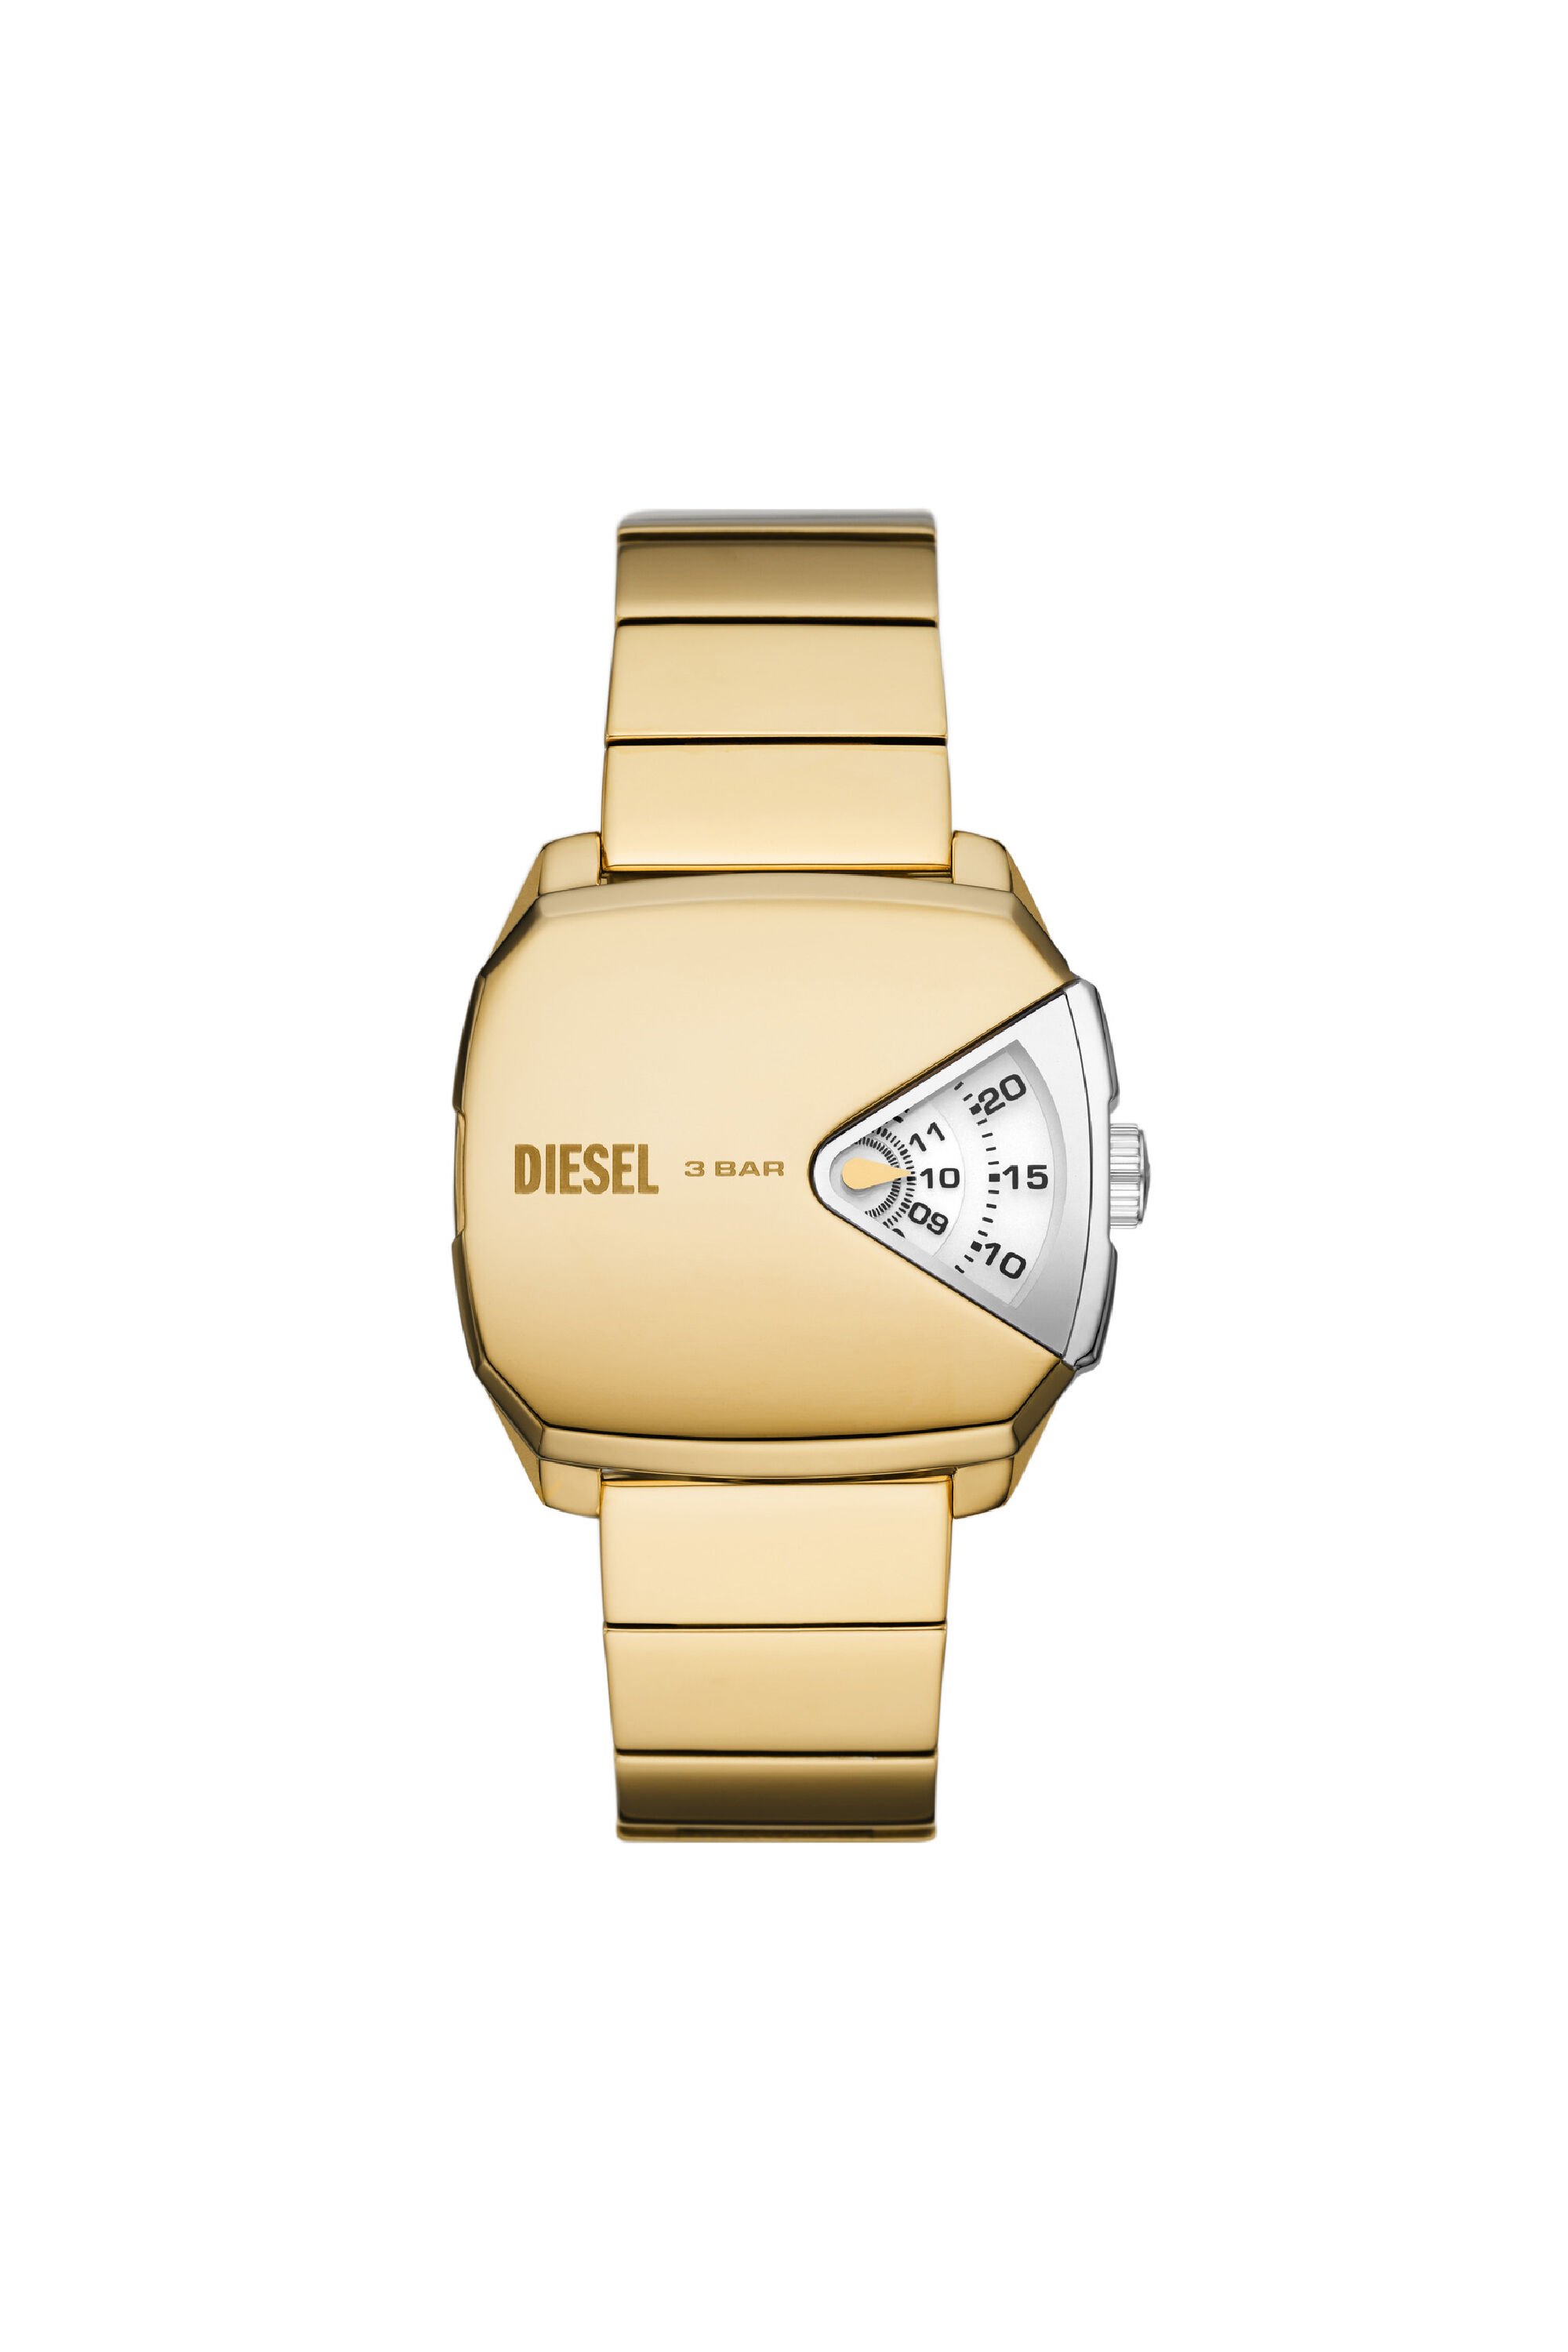 Diesel - DZ2154, Gold - Image 1